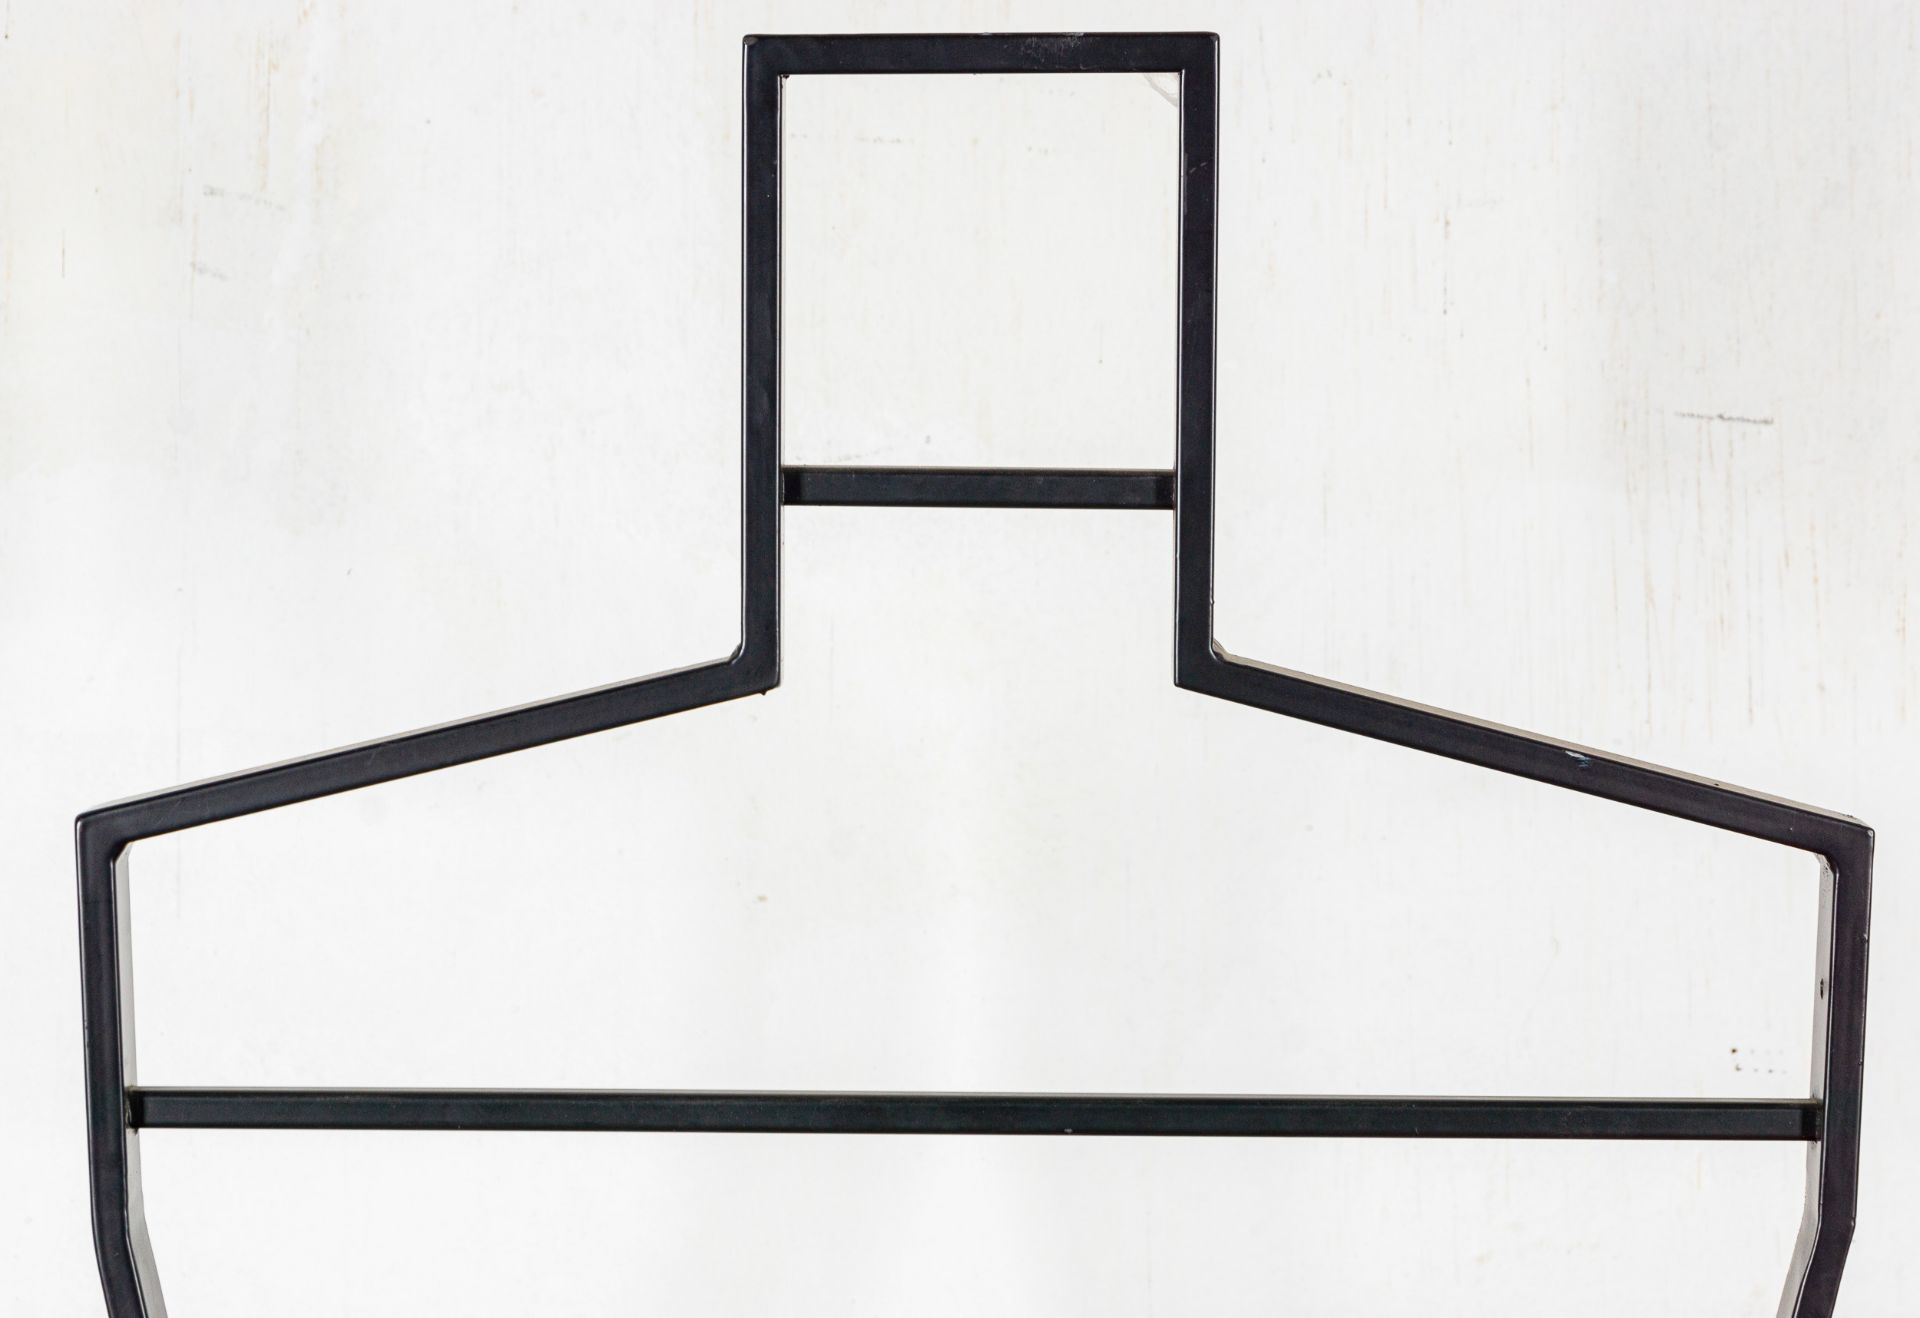 Kleiderständer, mattschwarz lackiertes Metallgestell, 1980/90er Jahre, Höhe ca. 181 cm. Guter Erhal - Bild 2 aus 3